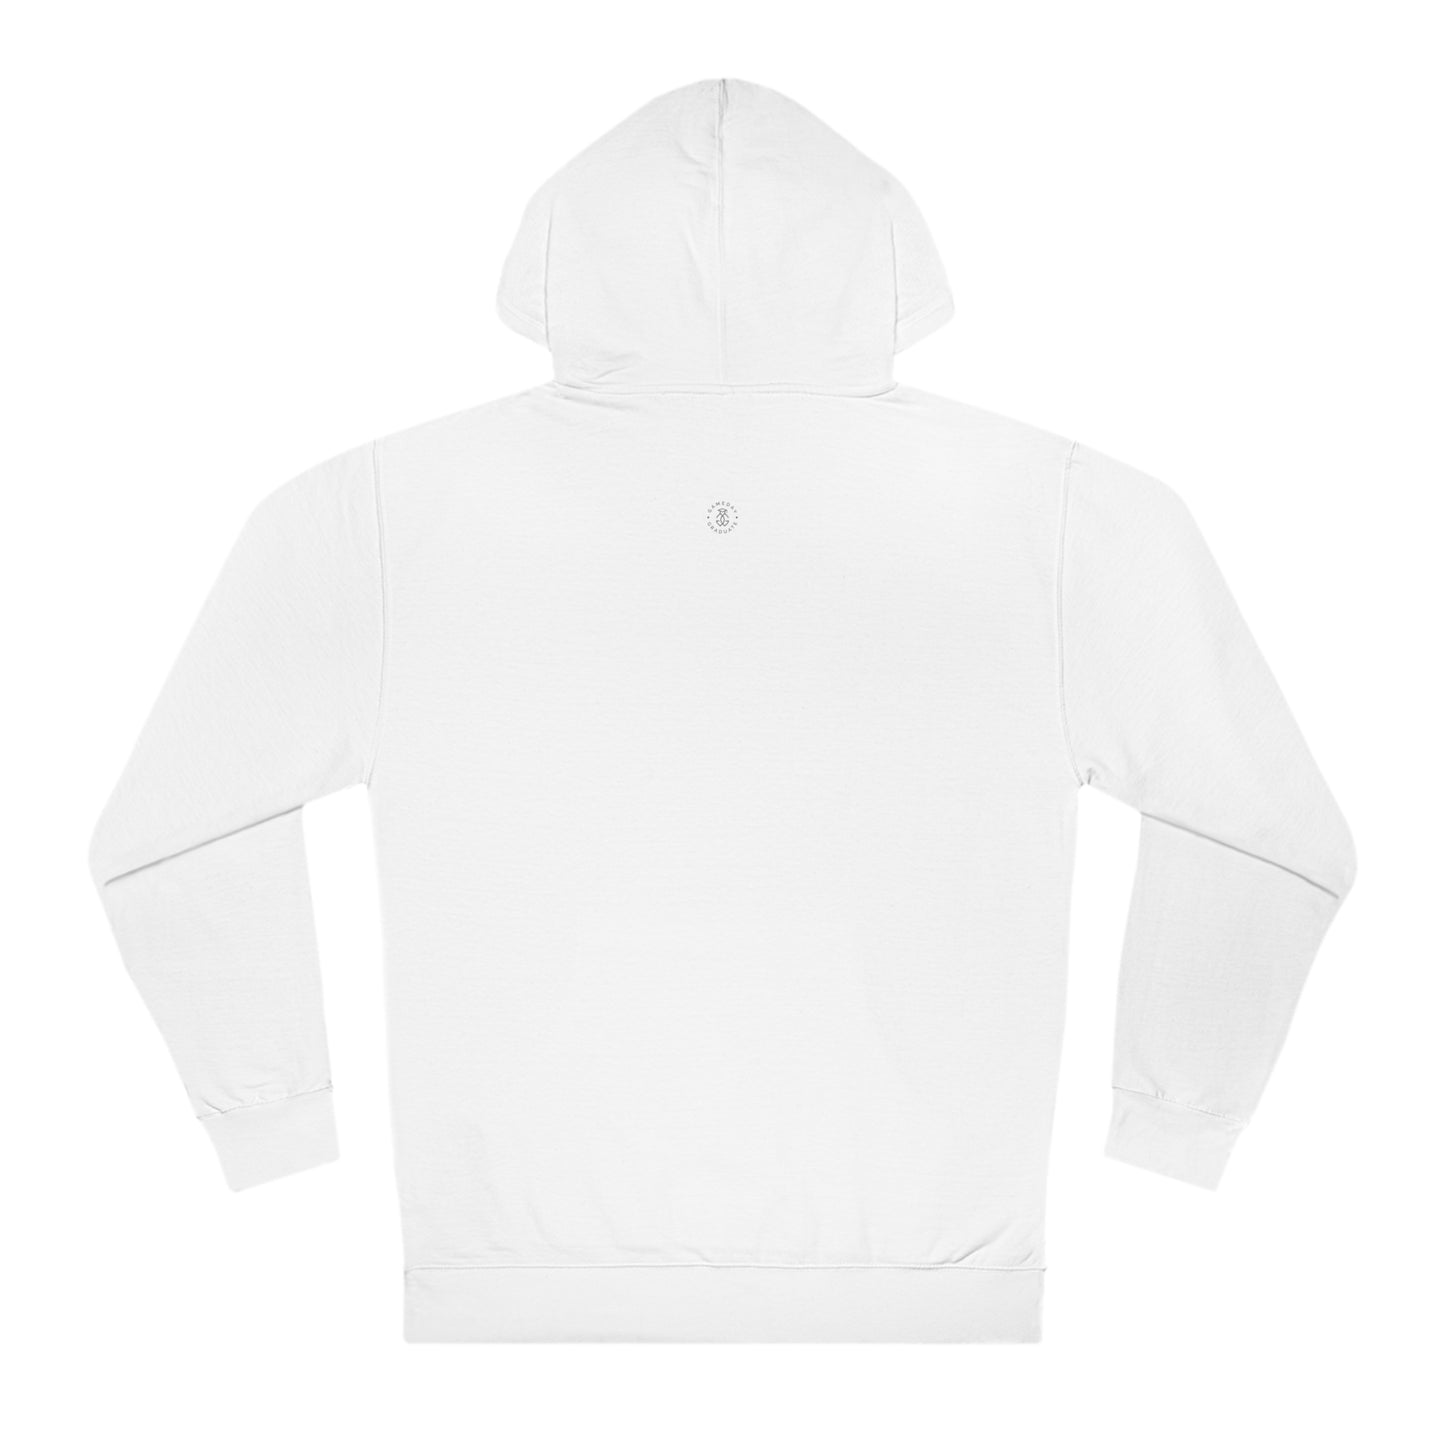 USF Hooded Sweatshirt